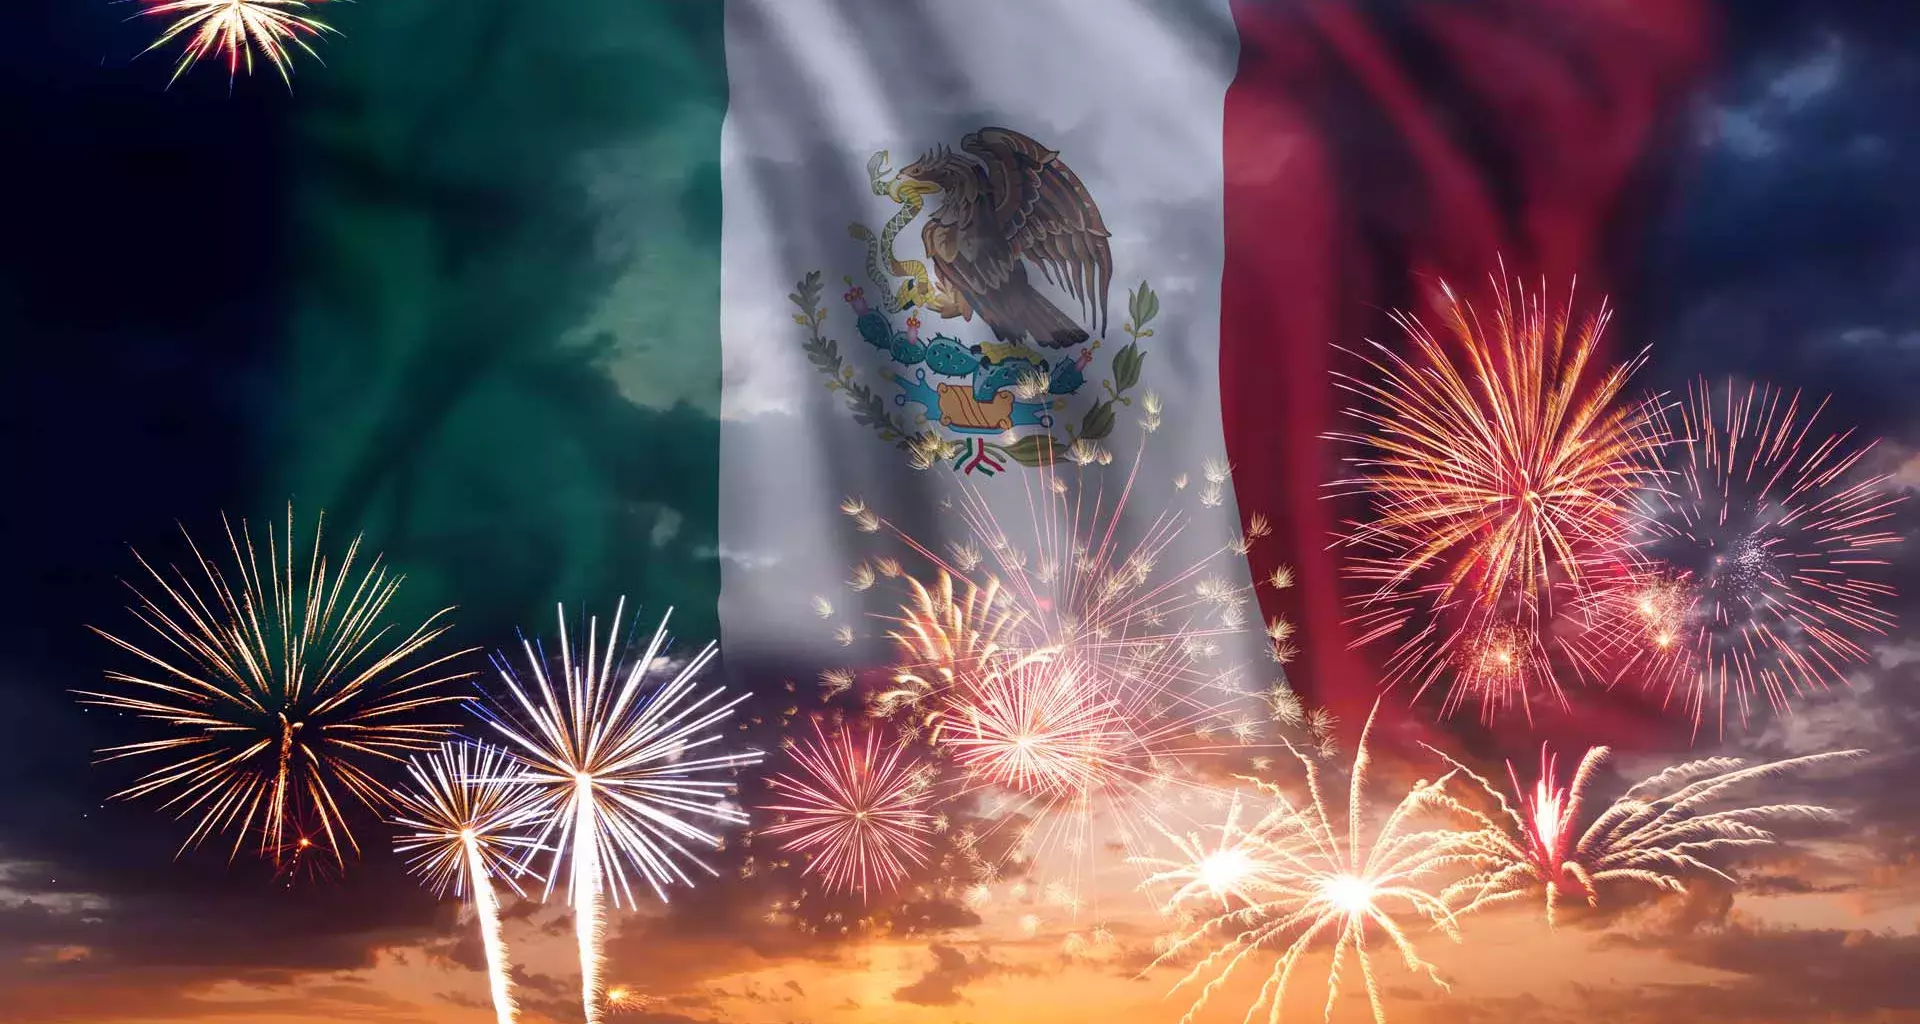 Datos curiosos de las Fiestas Patrias de México